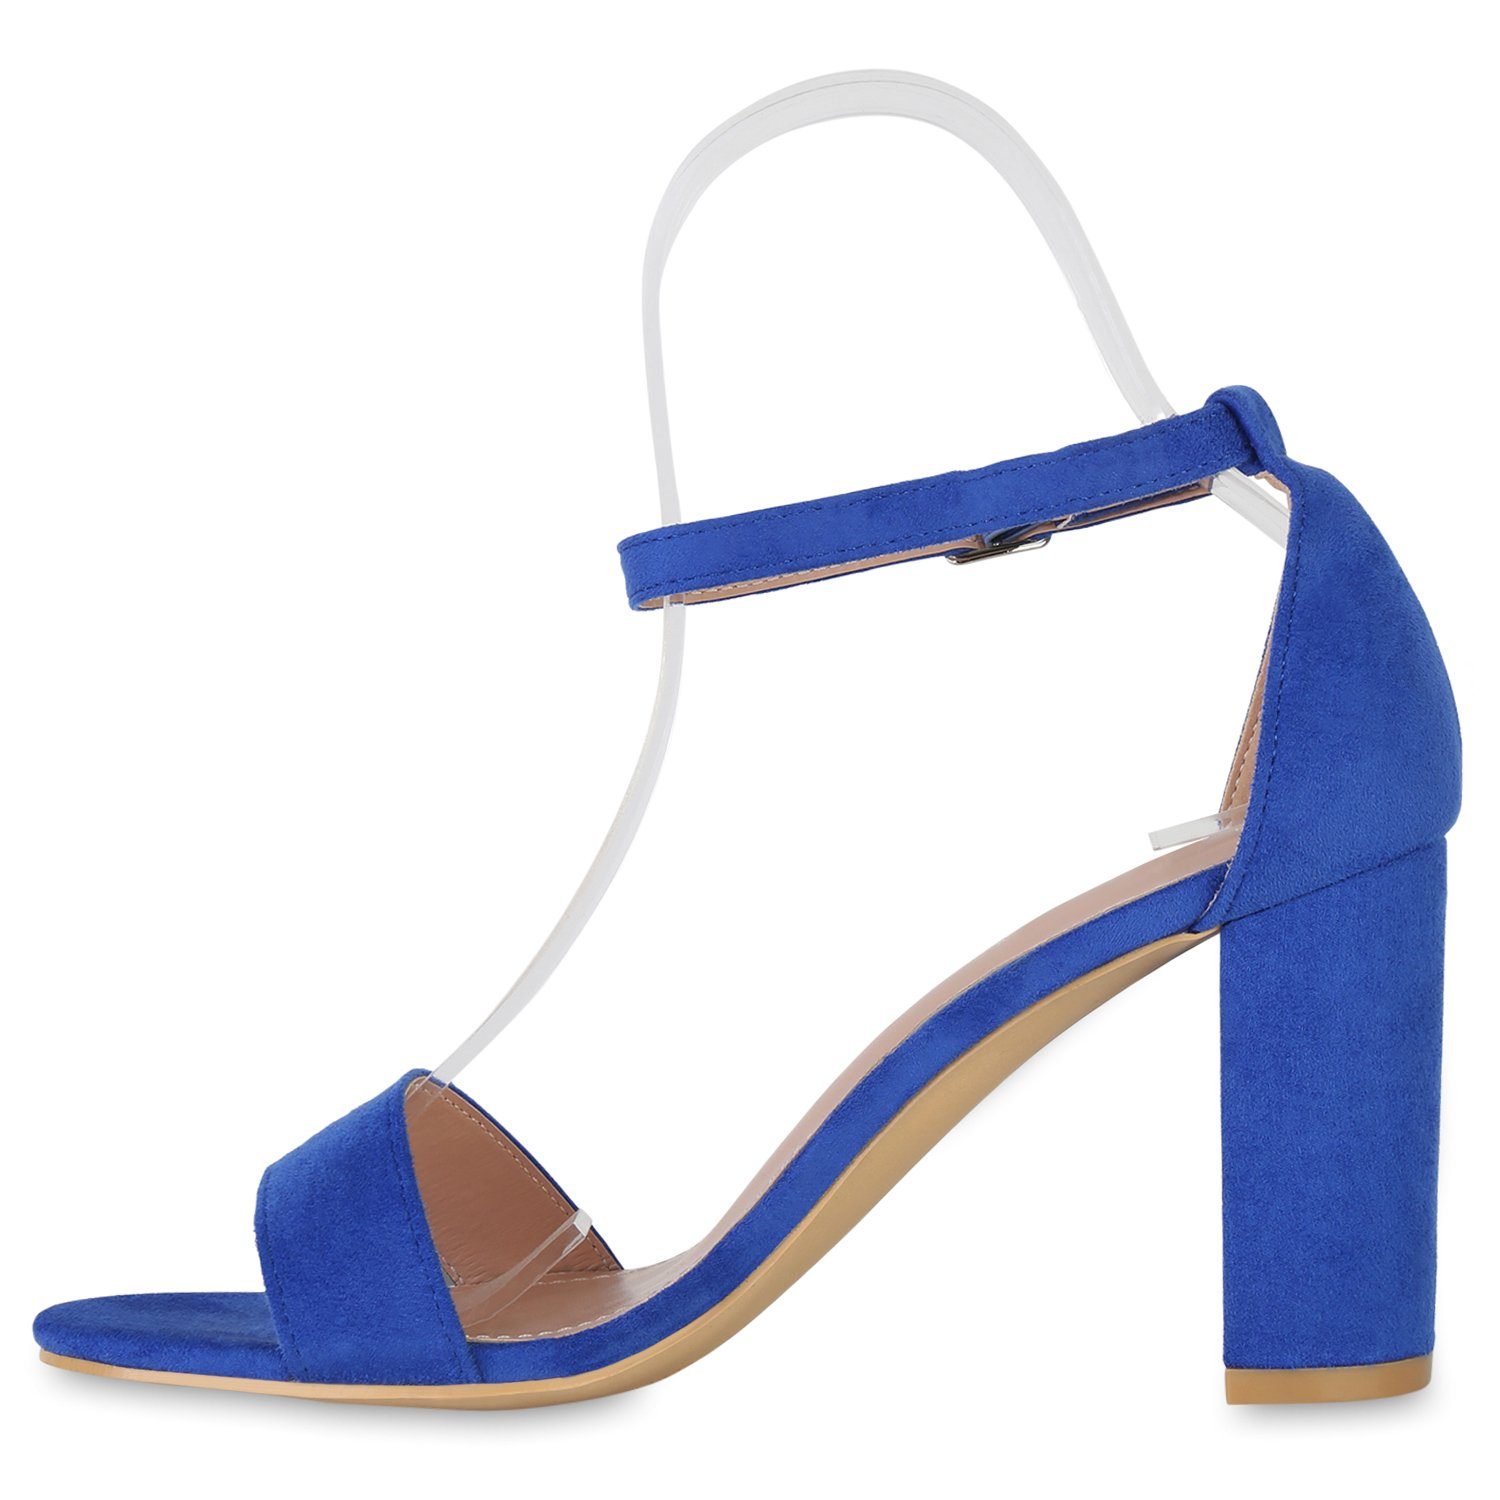 HILL VAN Blau 840051 Bequeme Sandalette Schuhe